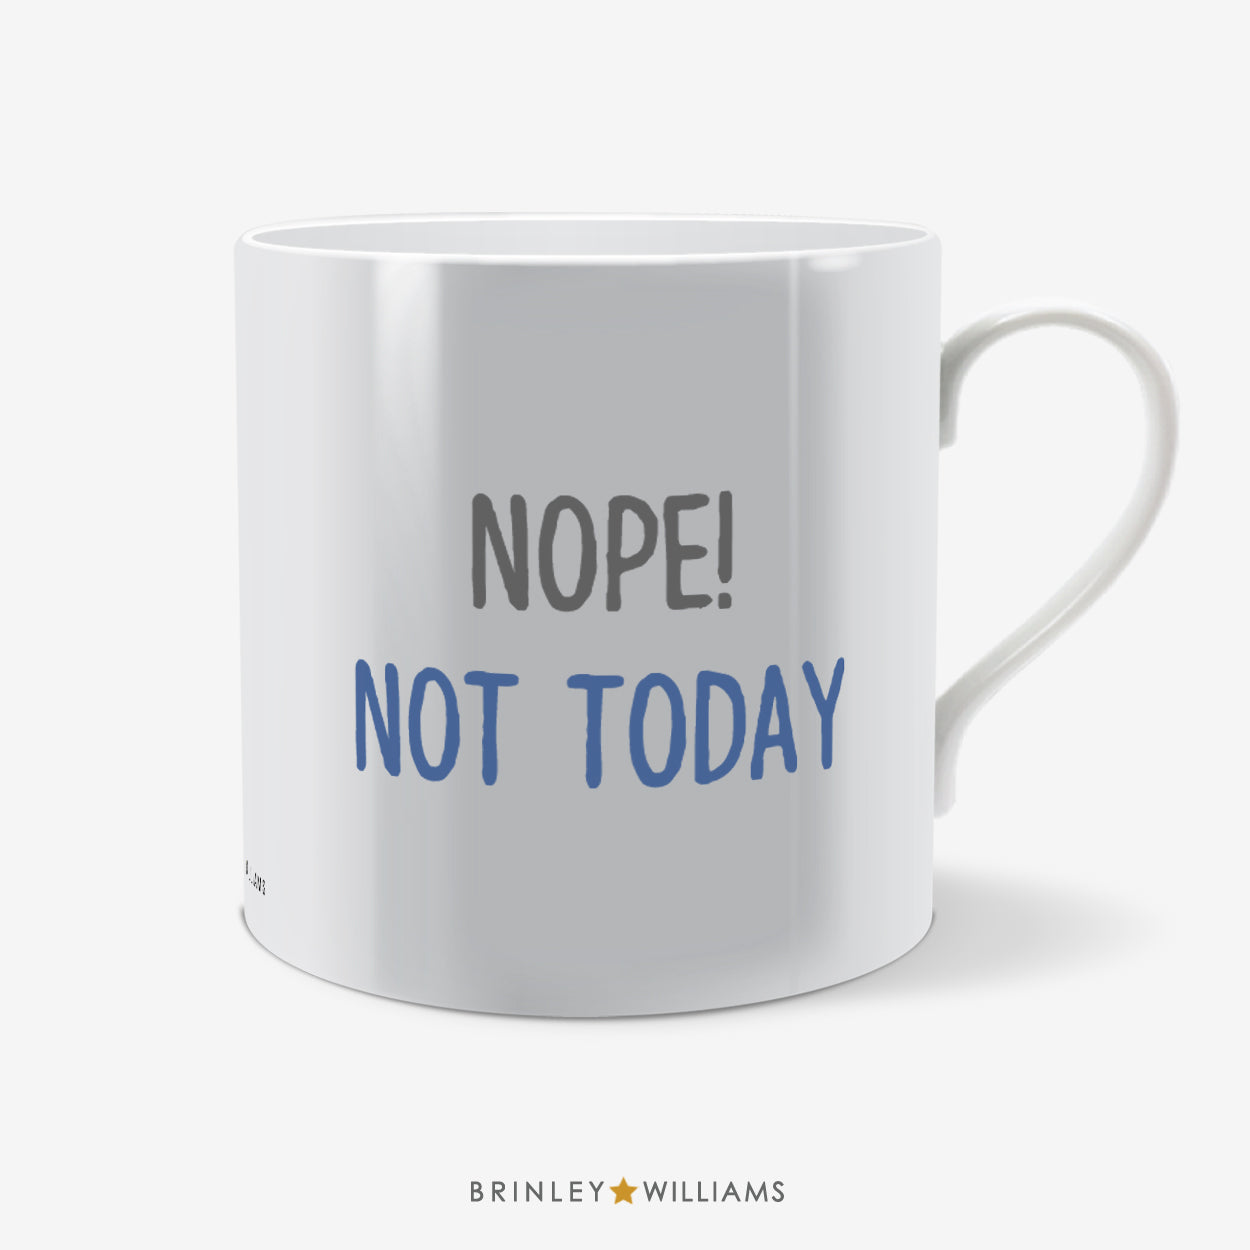 Nope! Not Today Fun Mug - Blue